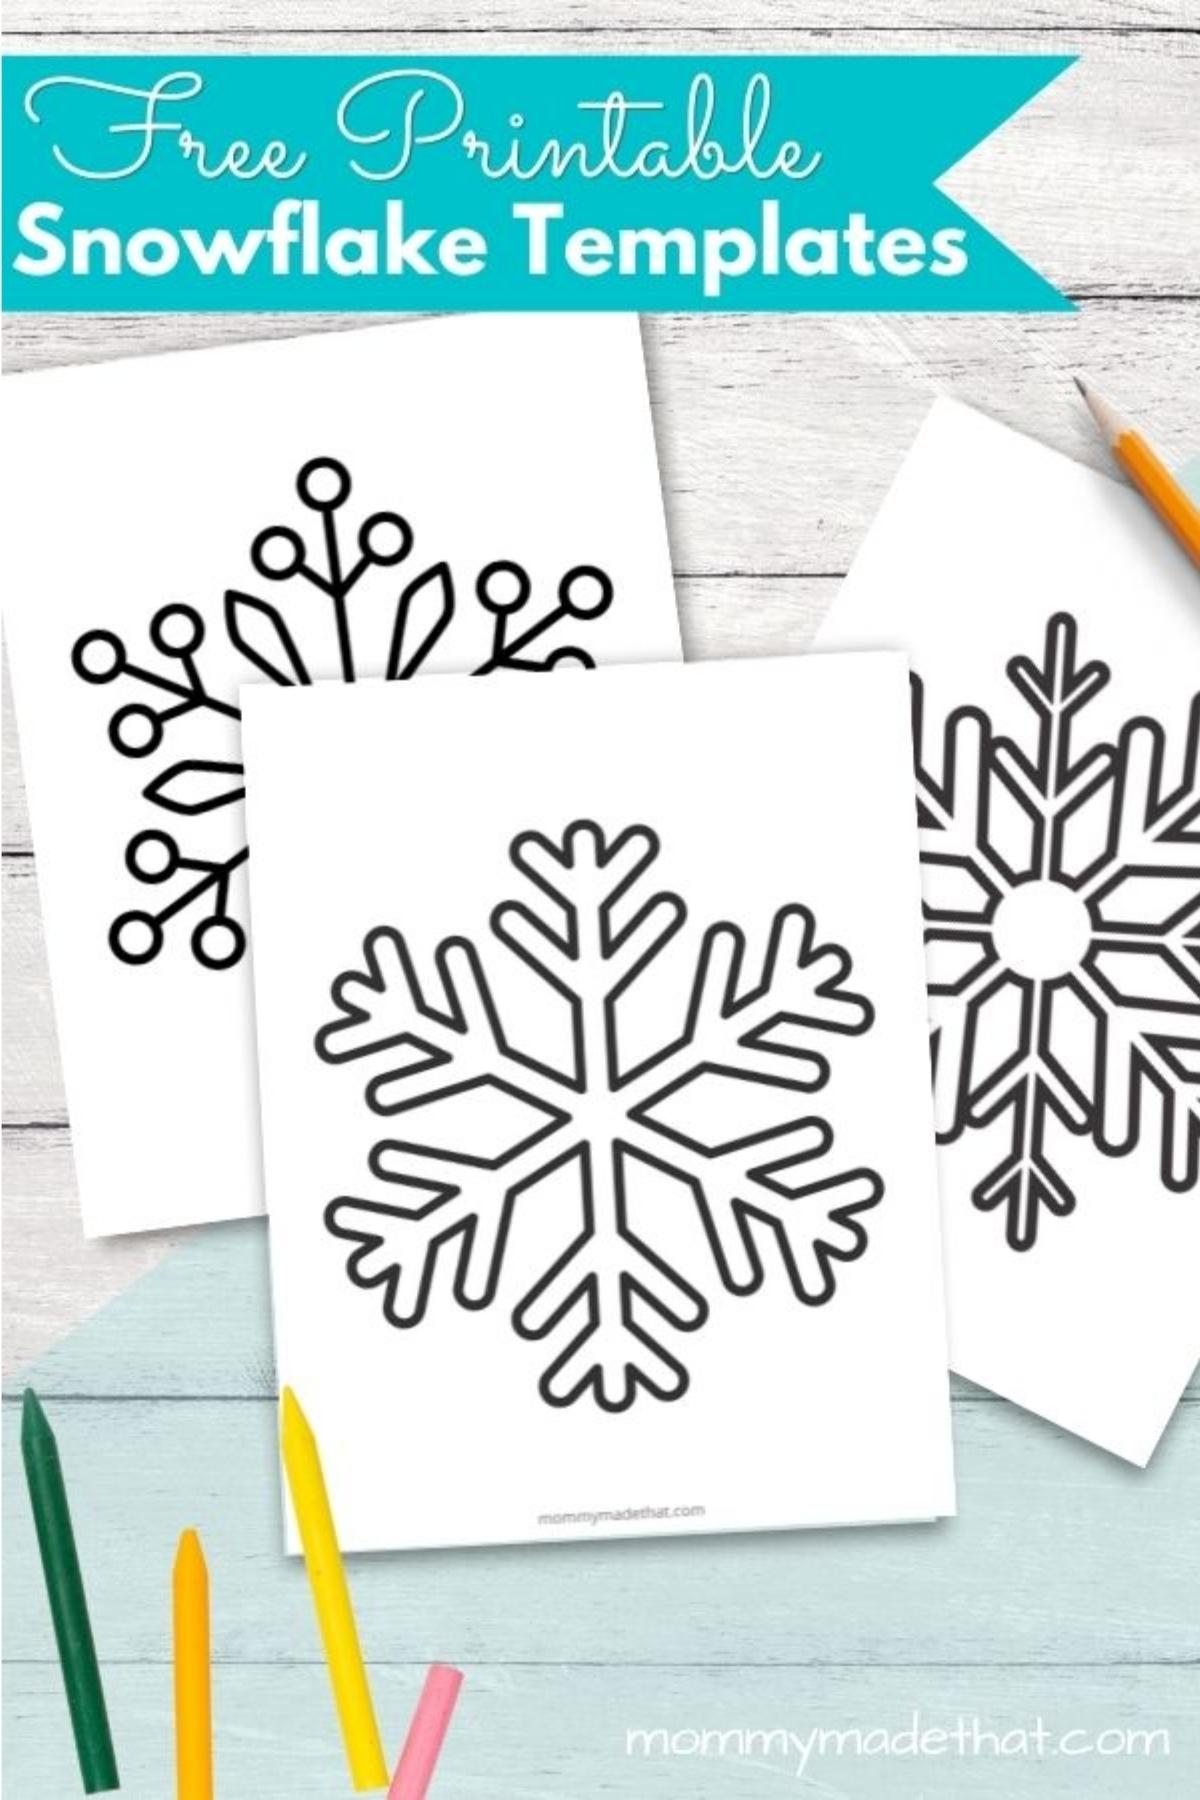 Printable snowflake templates for Christmas